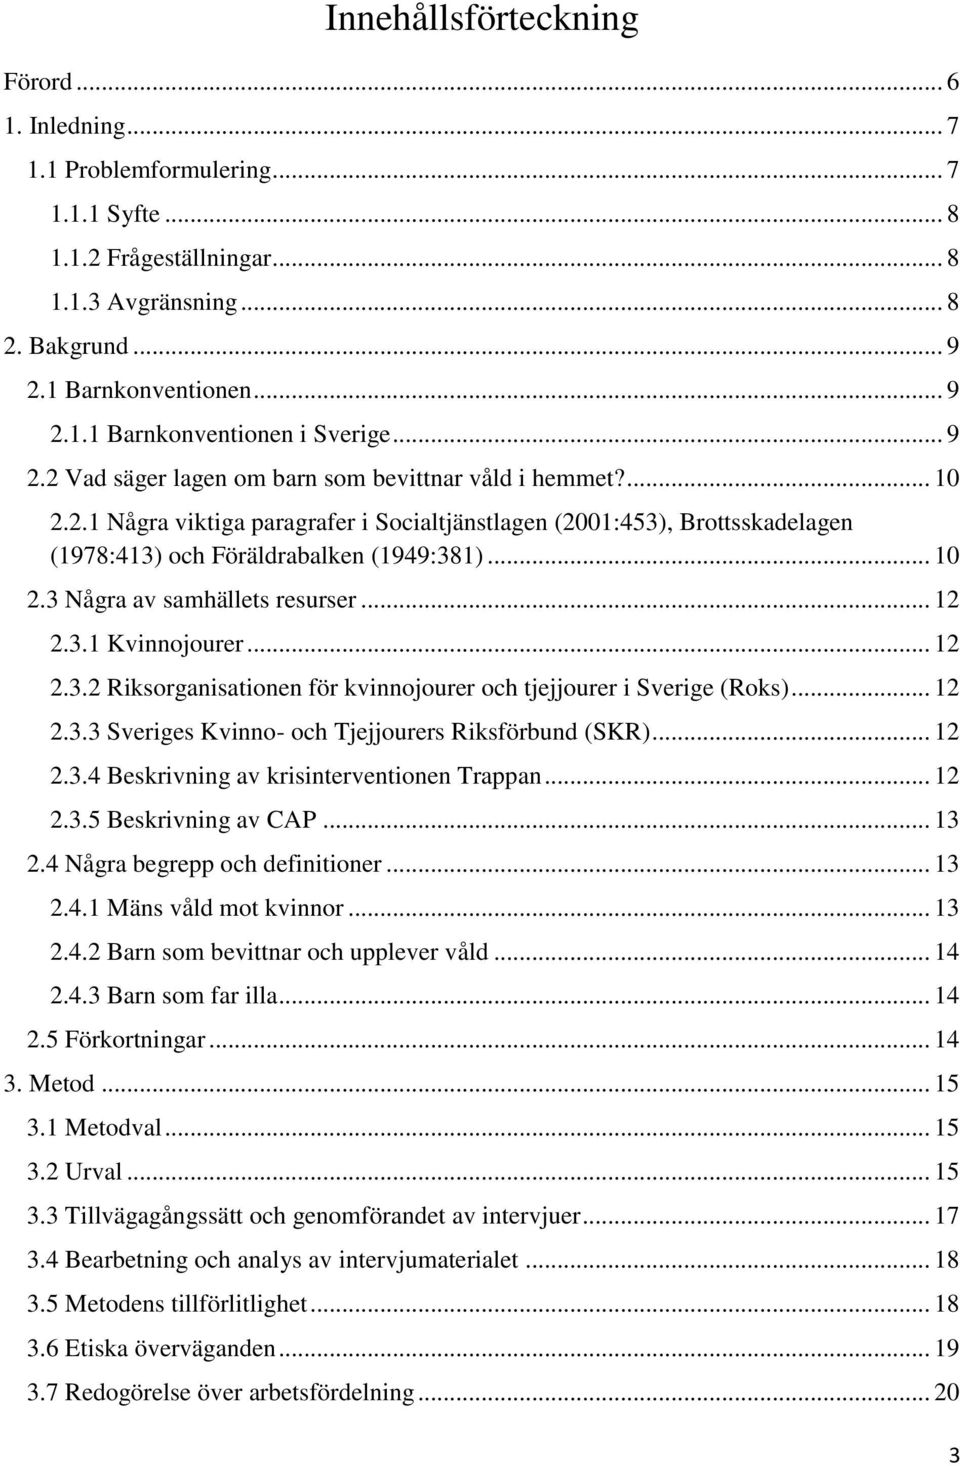 .. 12 2.3.1 Kvinnojourer... 12 2.3.2 Riksorganisationen för kvinnojourer och tjejjourer i Sverige (Roks)... 12 2.3.3 Sveriges Kvinno- och Tjejjourers Riksförbund (SKR)... 12 2.3.4 Beskrivning av krisinterventionen Trappan.